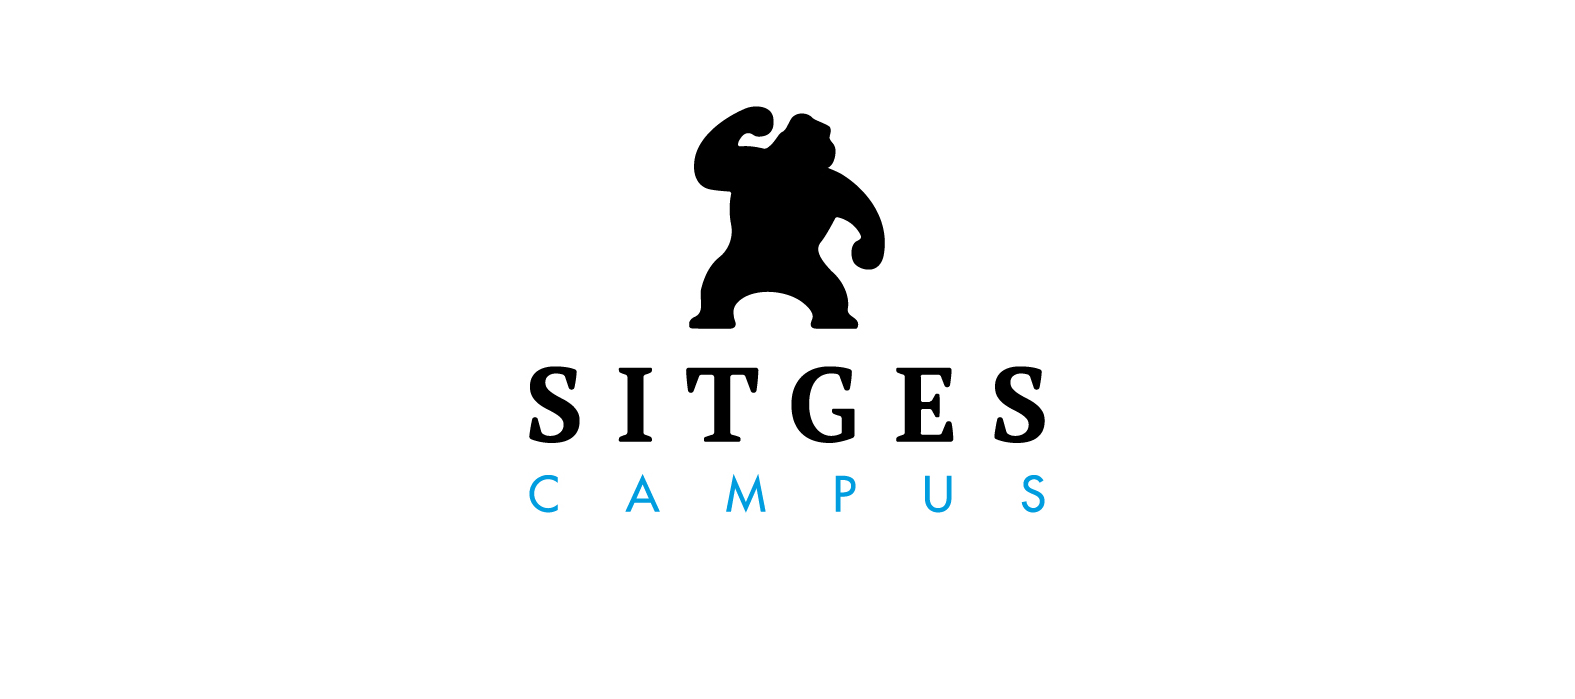 Sitges campus